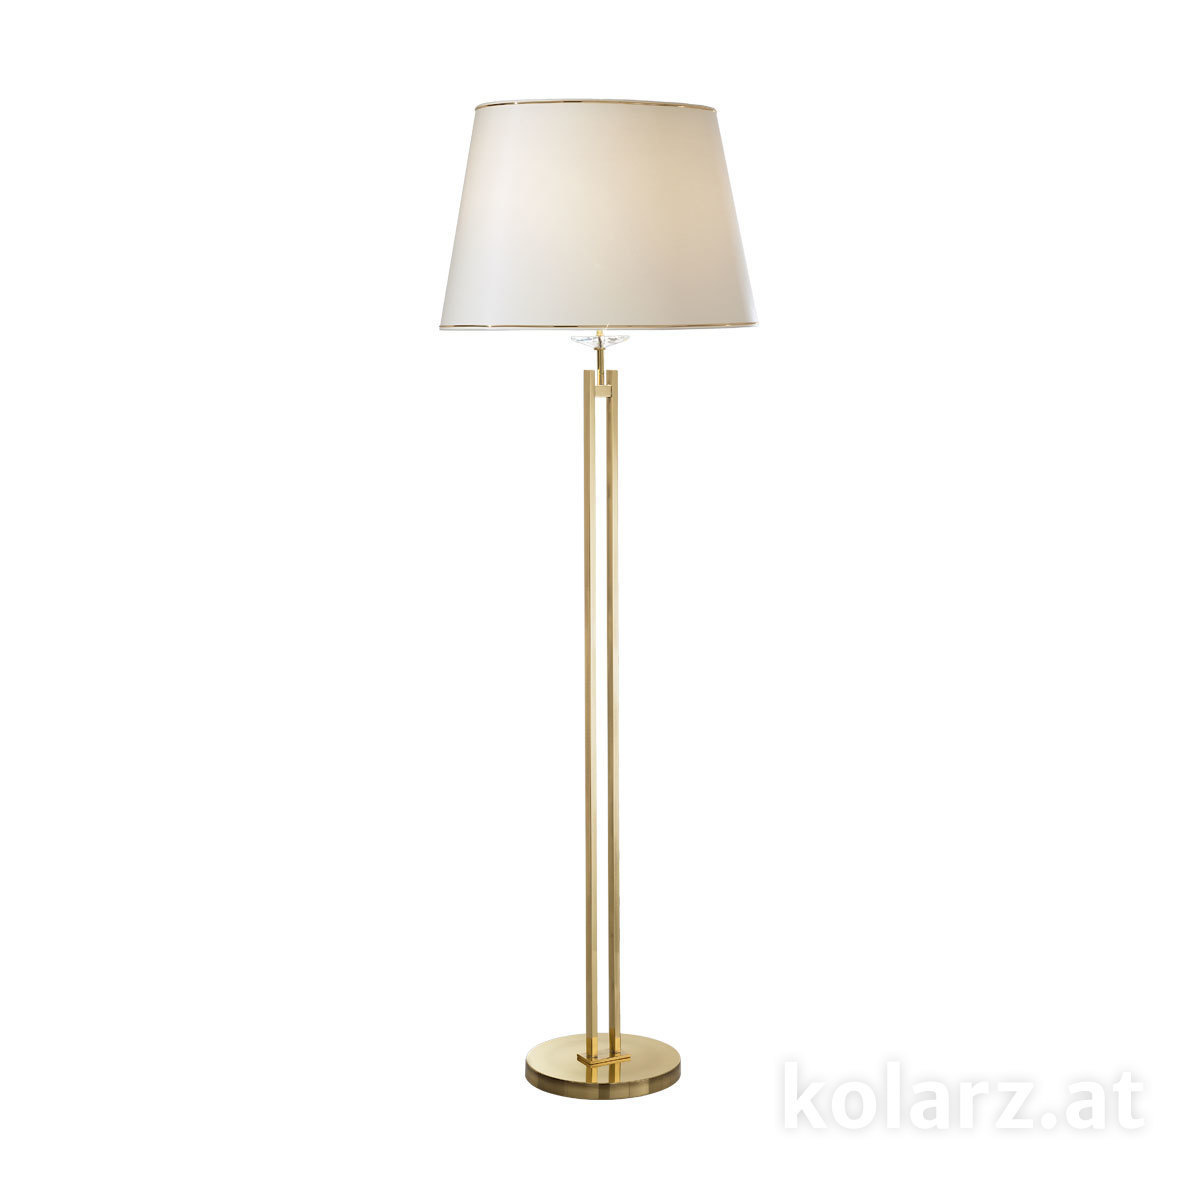 KOLARZ Leuchten Stehleuchten & Stehlampen fürs Schlafzimmer von KOLARZ Leuchten Bodenleuchte,  floor lamp - Imperial 330.42.8C